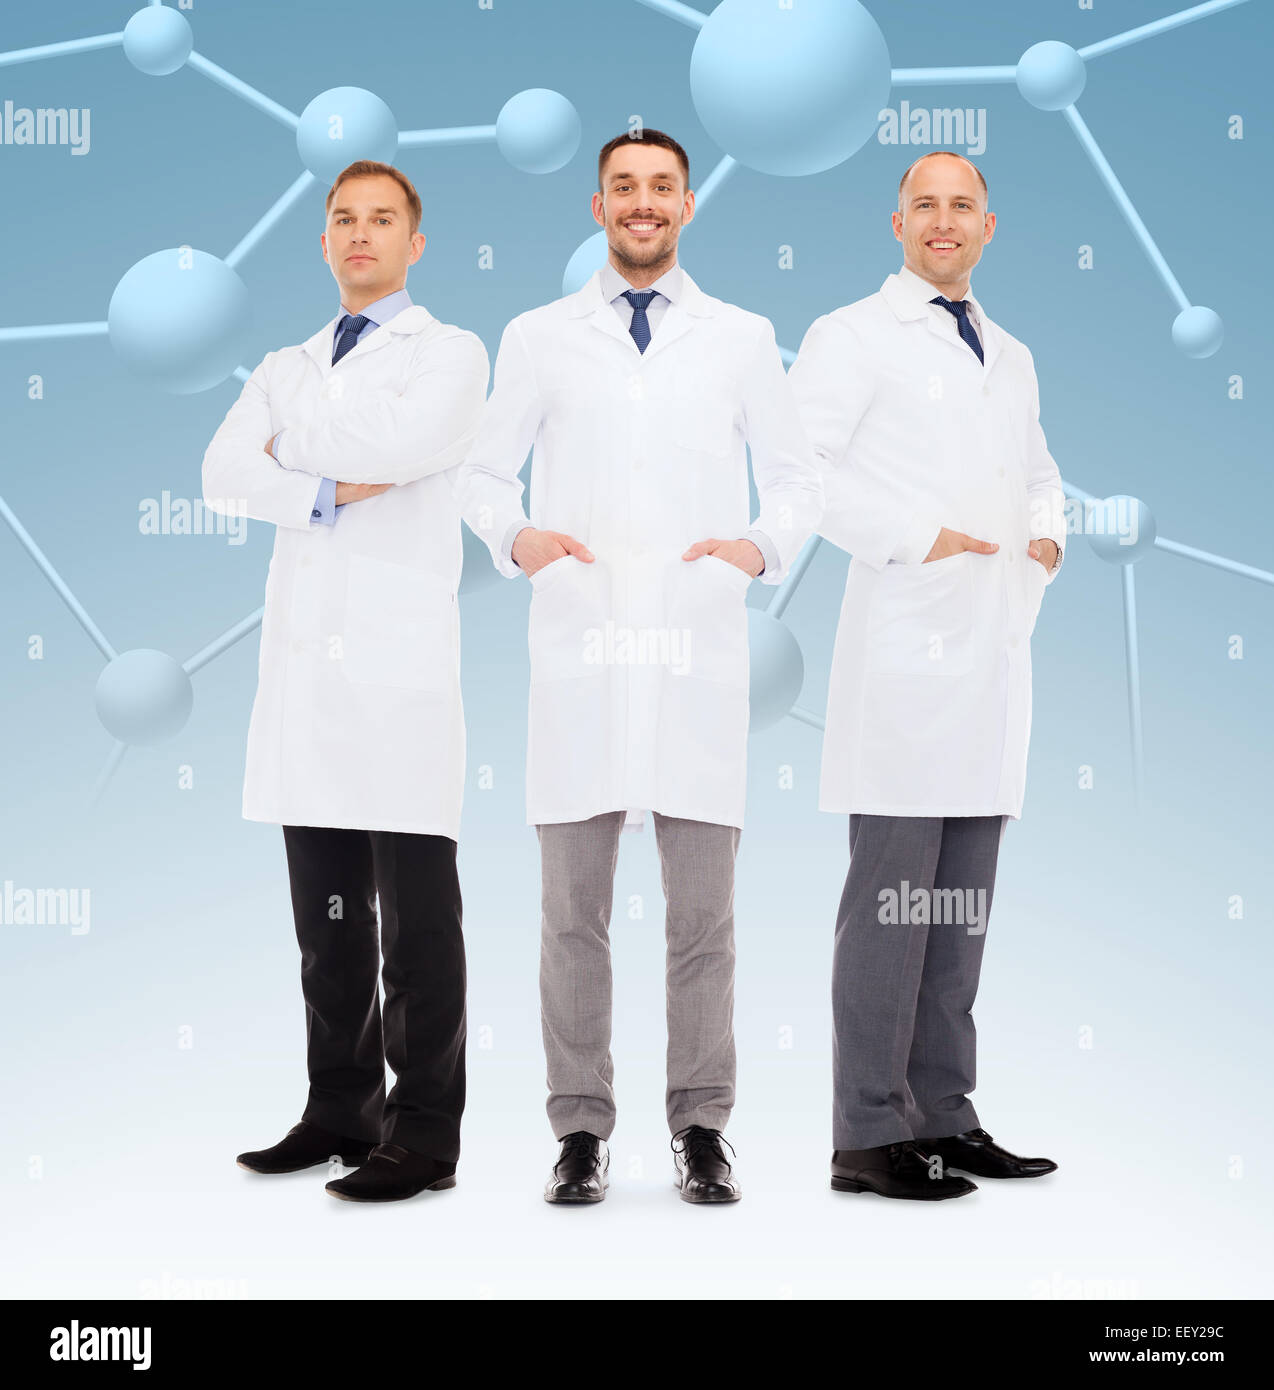 Gruppe von männlichen Ärzten in weißen Kitteln lächelnd Stockfoto